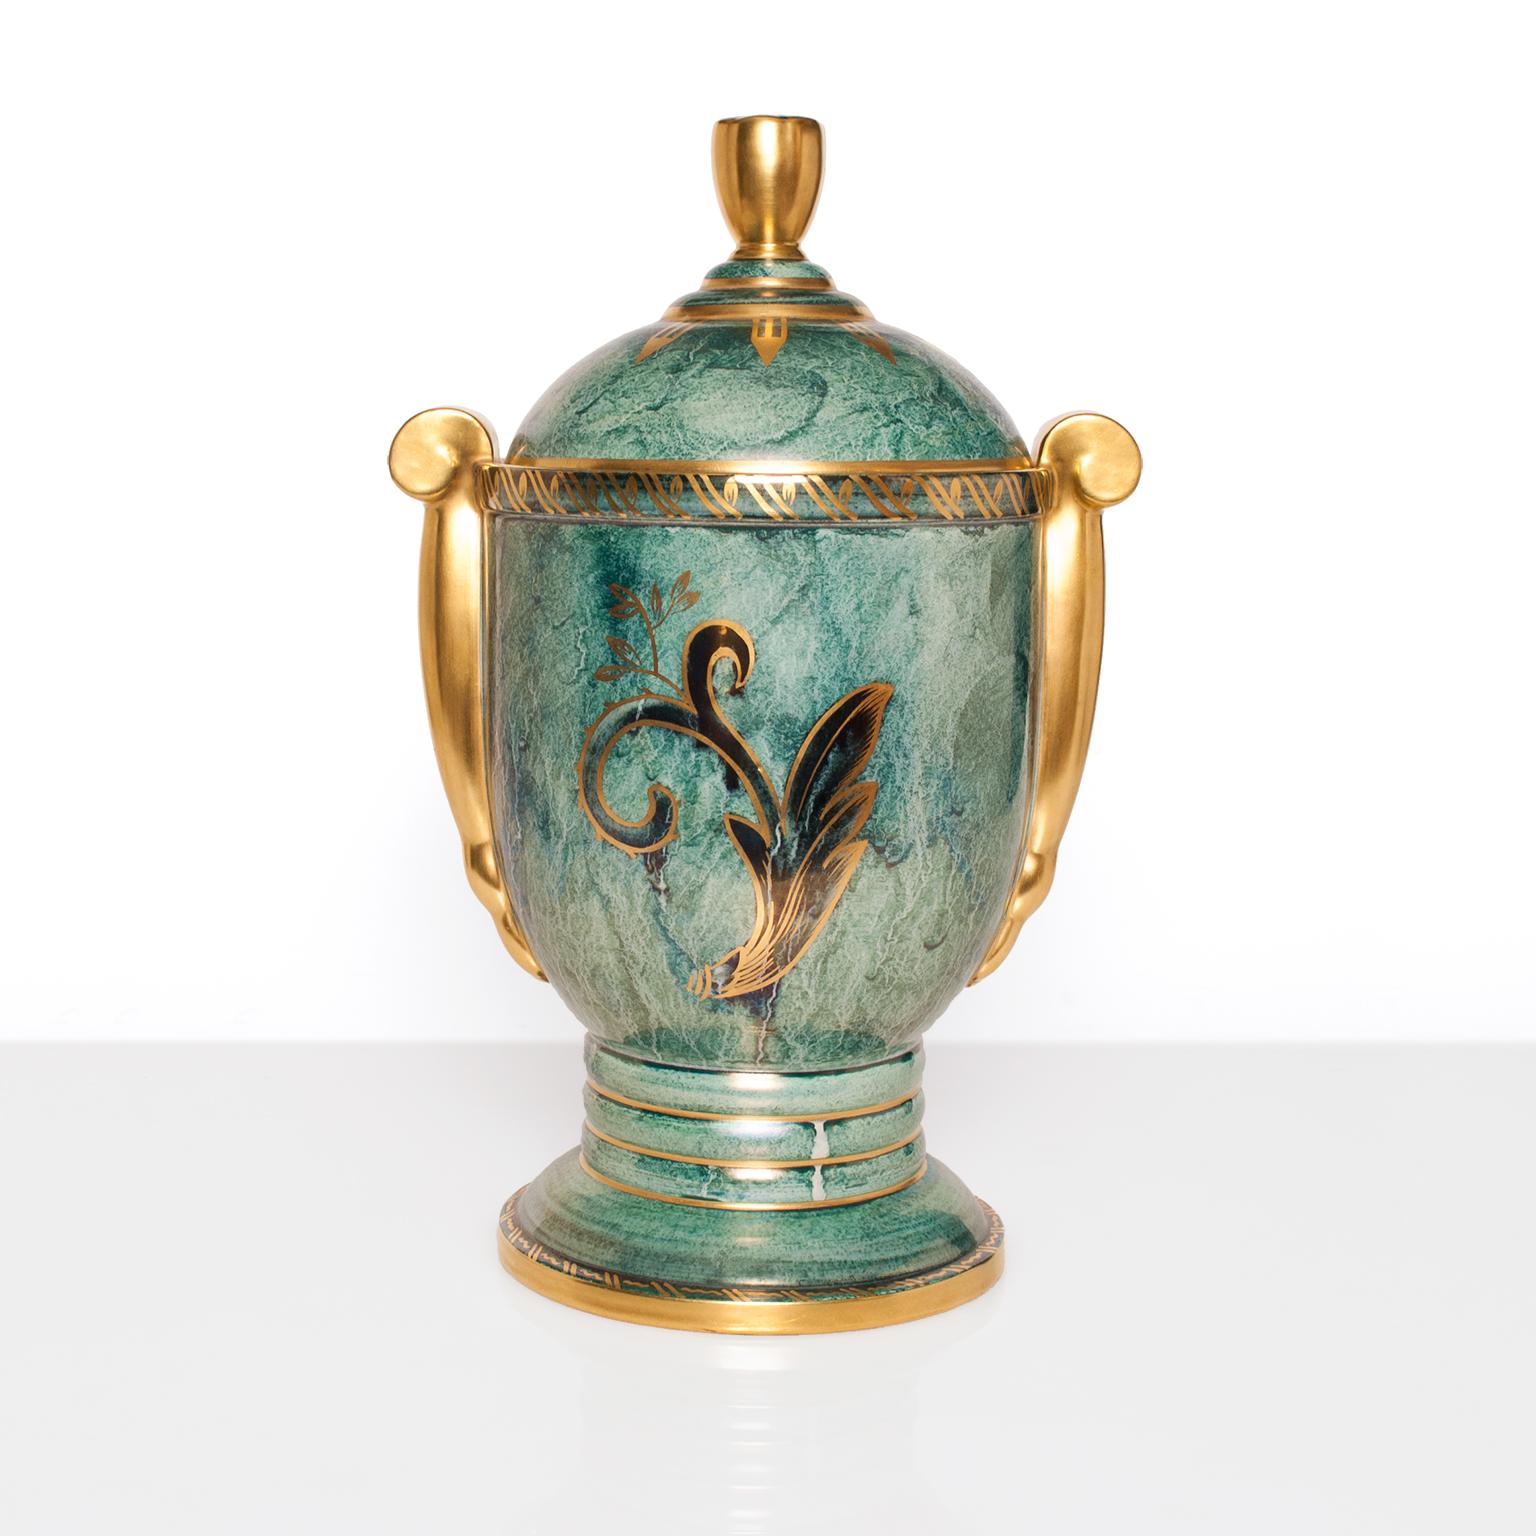 Große und seltene schwedische Art-Deco-Keramik-Urne mit grüner und goldener Glanzglasur, handdekoriert mit Gold. Entworfen von Josef Ekberg für Gustavsberg. Ausgezeichneter Zustand. Höhe 16